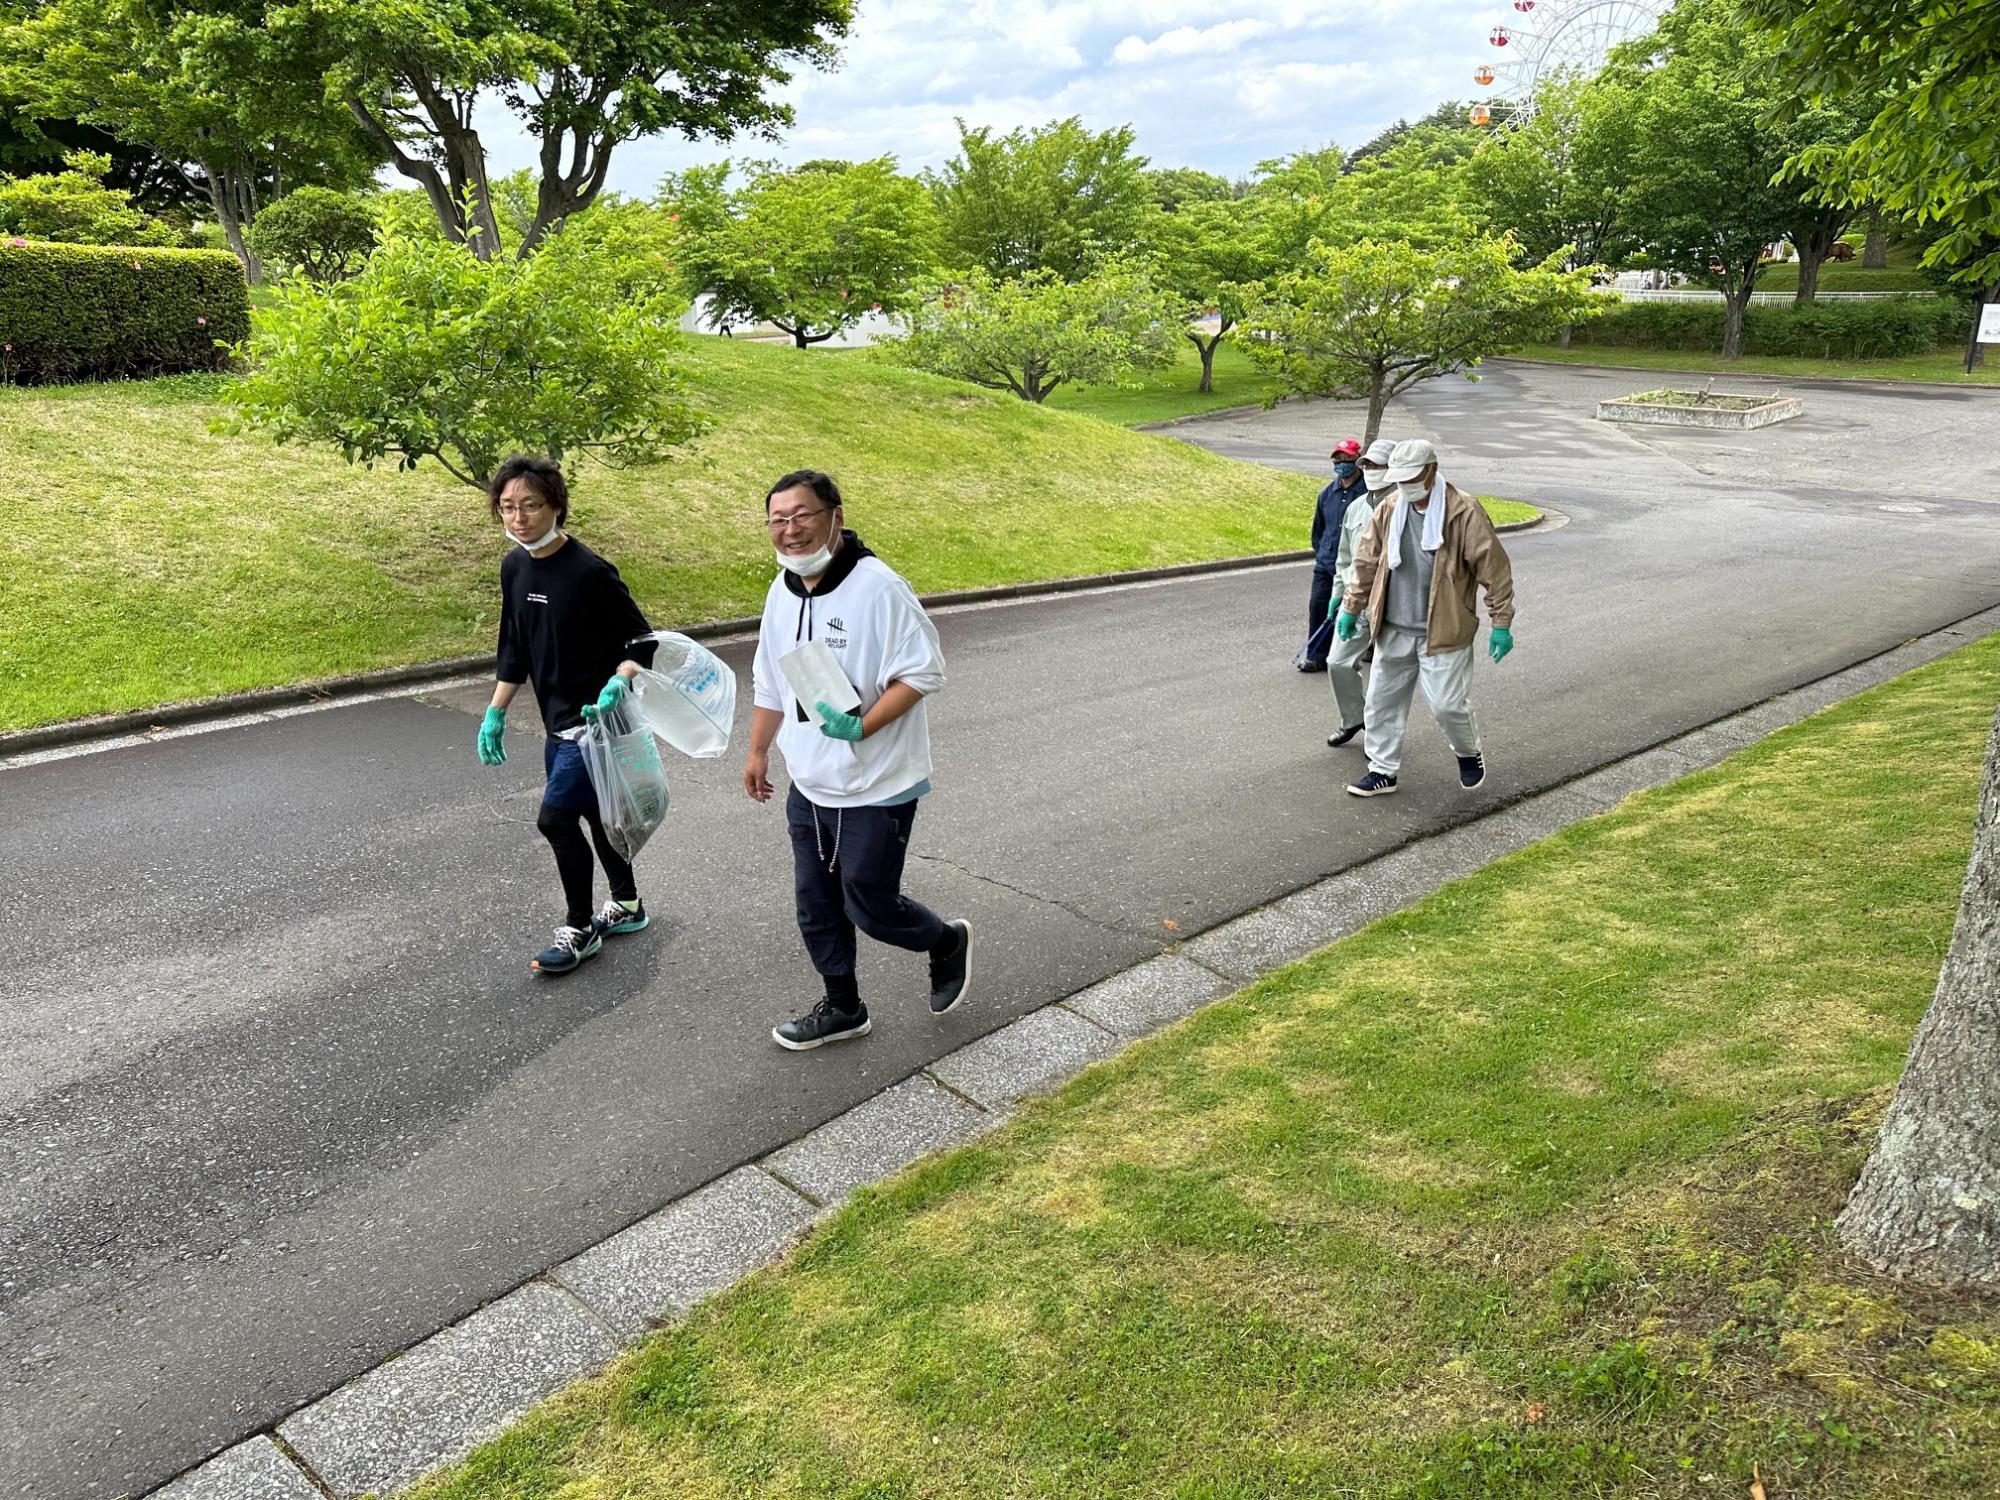 ボランティア用ごみ袋を手に公園内を歩く四人の写真